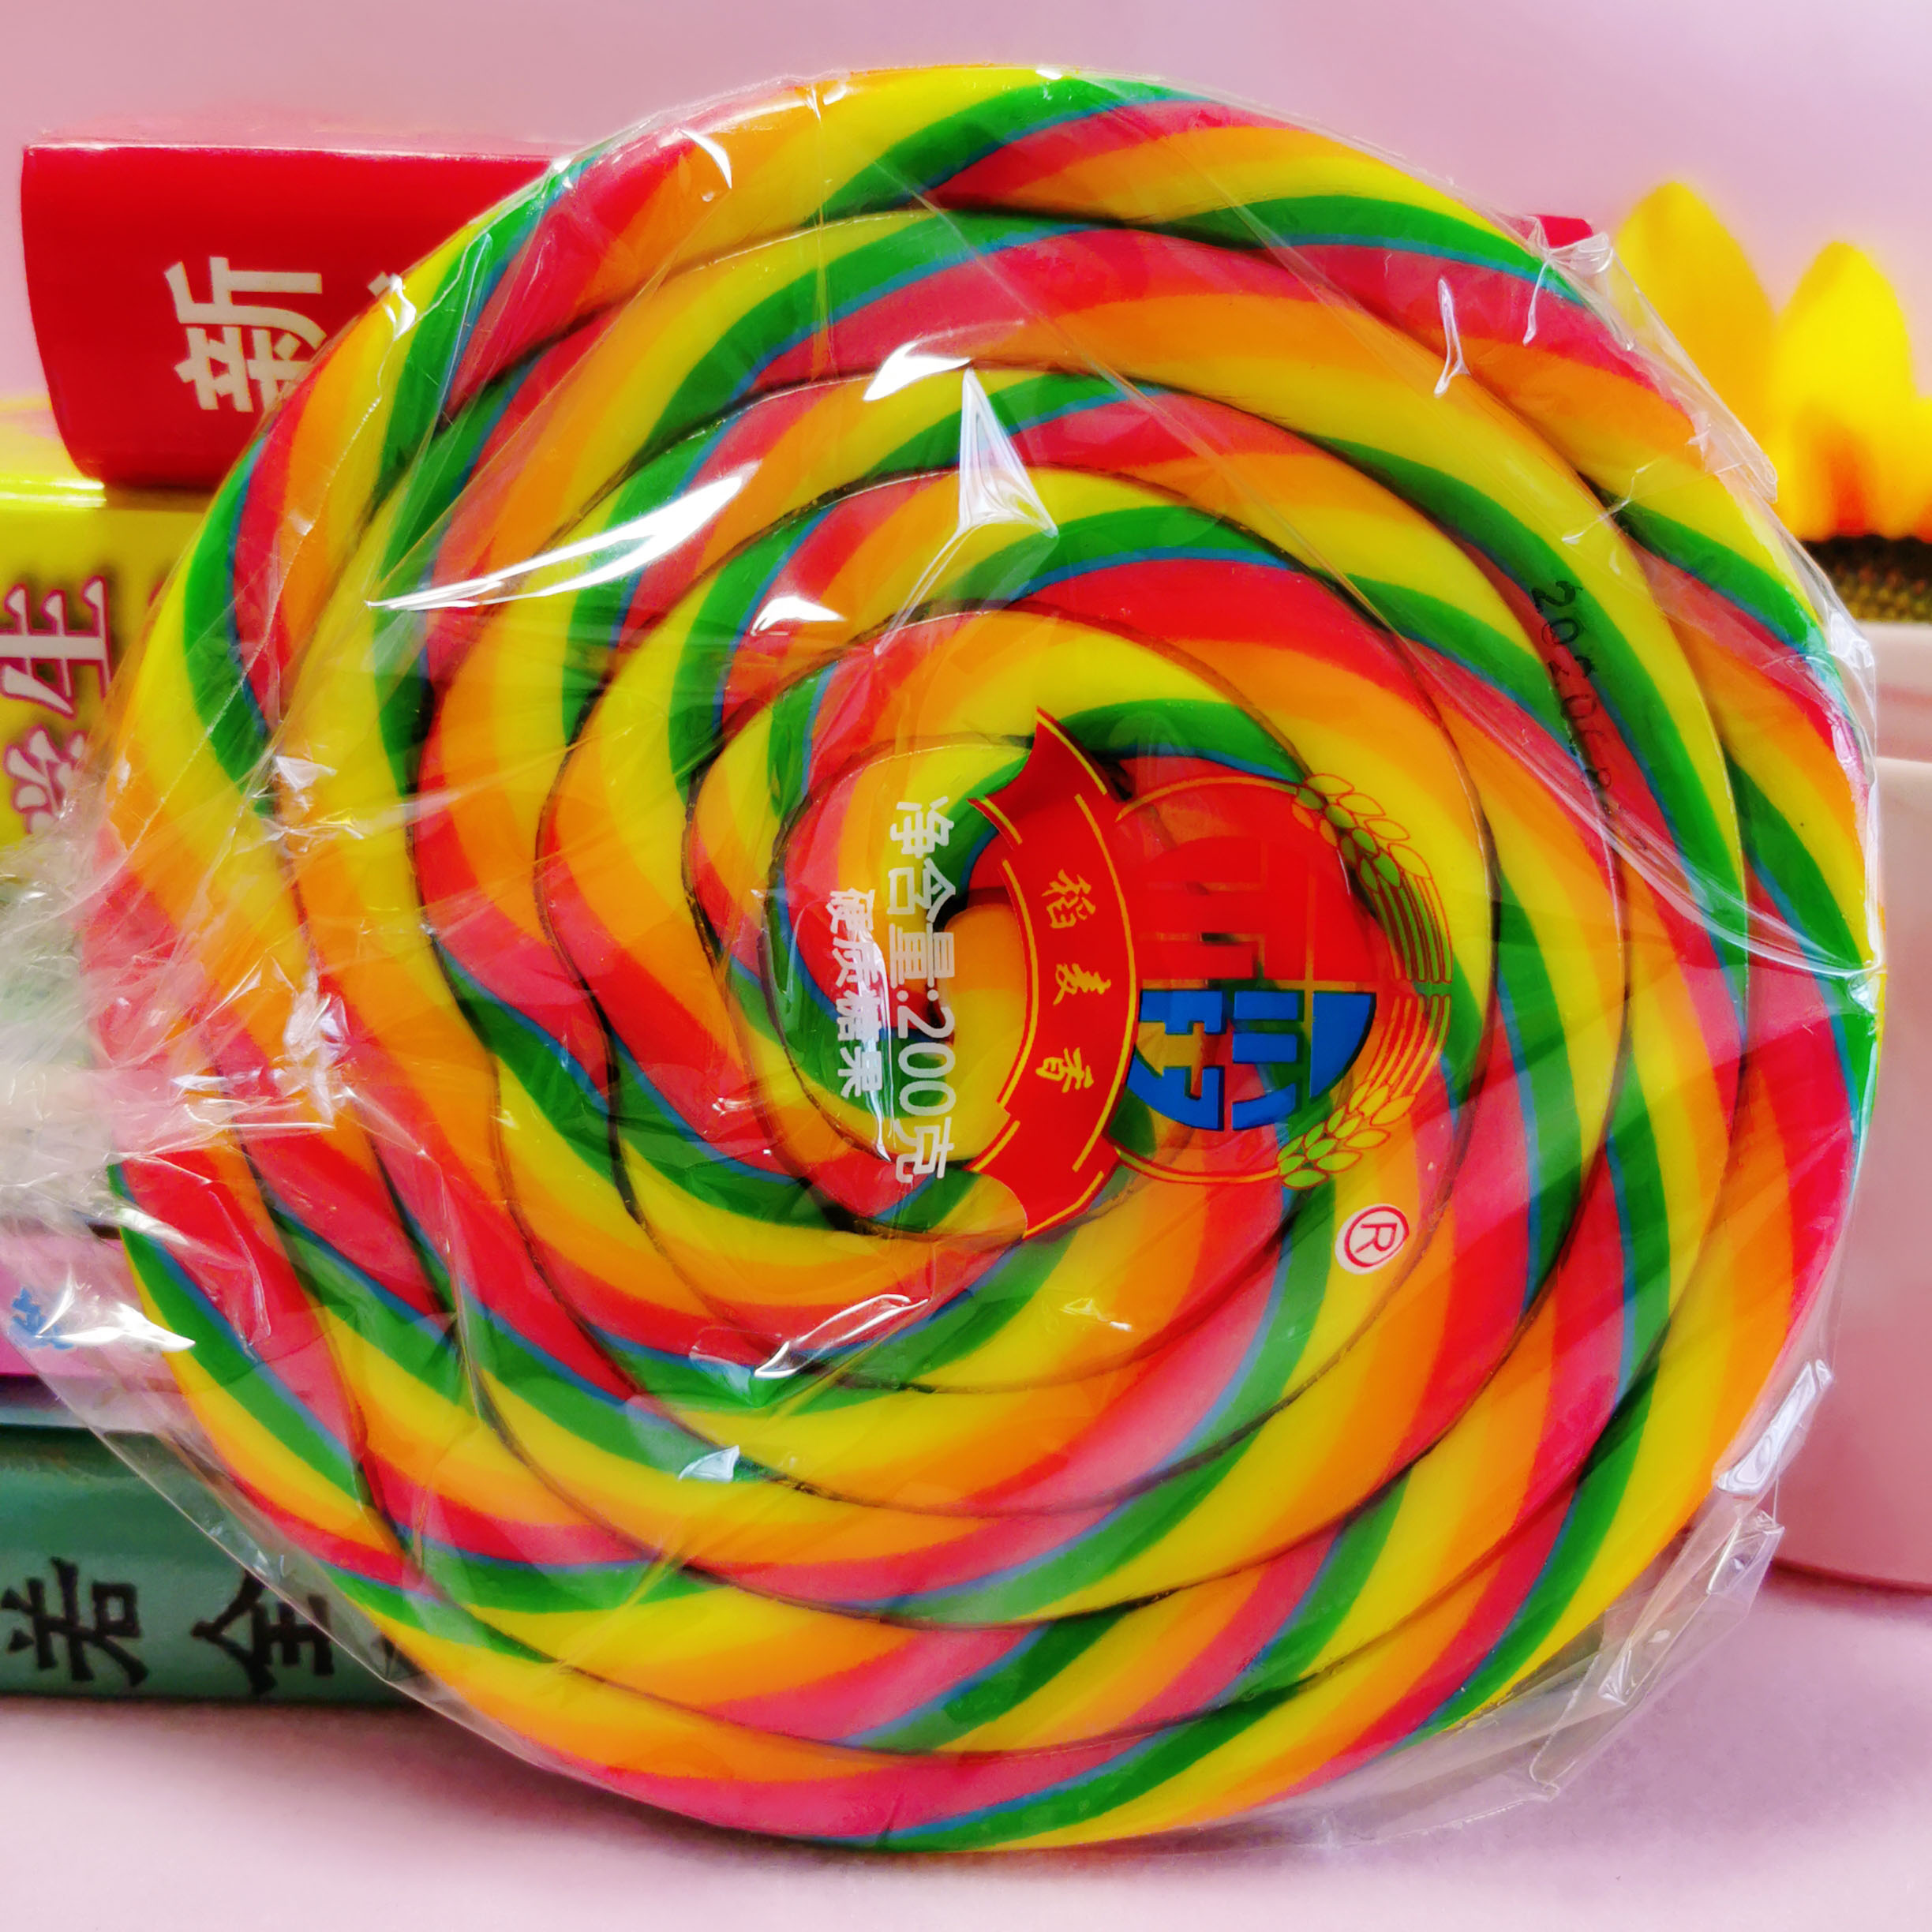 超大棒棒糖彩虹波板糖巨型特大棒棒糖送女生同学闺蜜儿童生日礼物